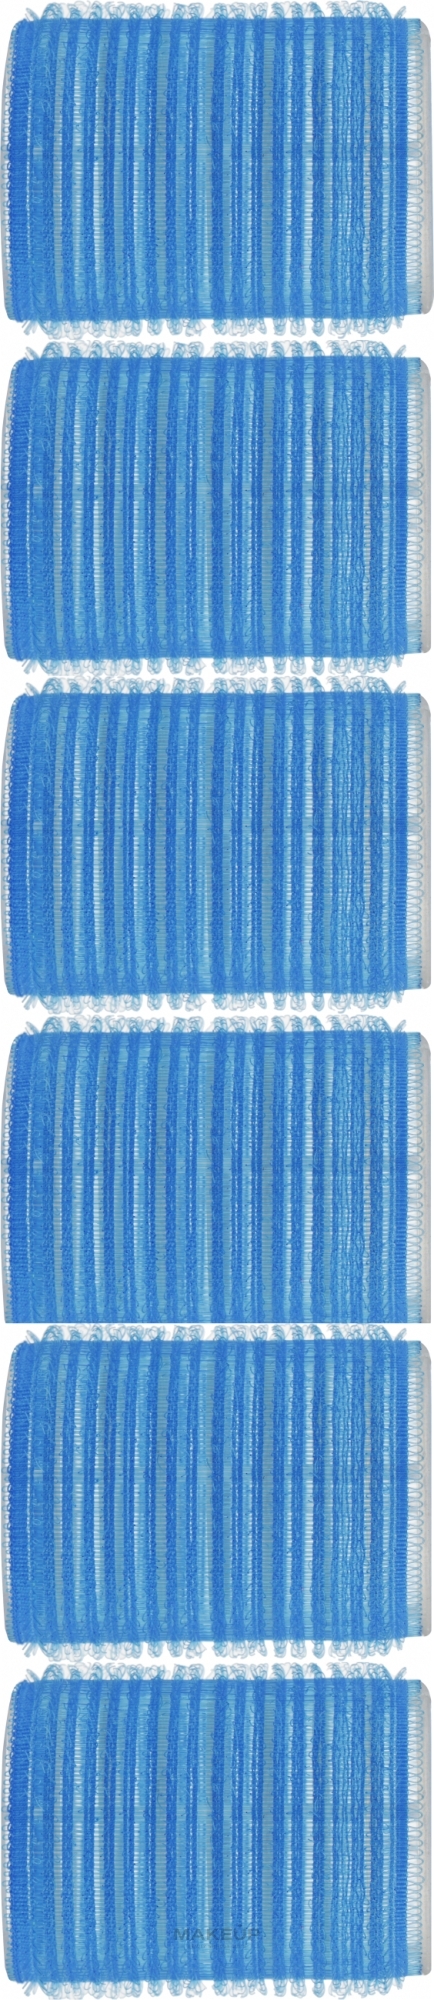 Бігуді-липучки 0447, 44 мм, сині - SPL — фото 6шт